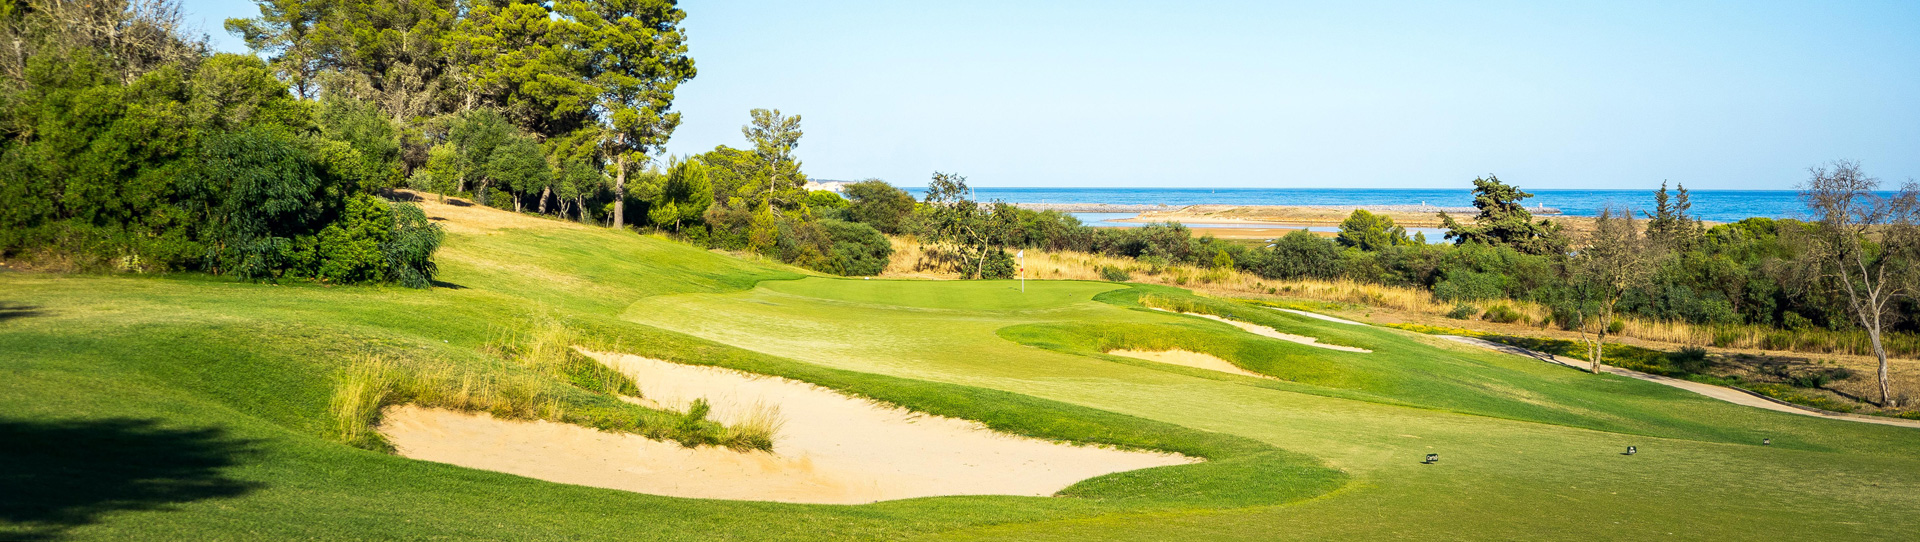 Portugal golf holidays - Amendoeira & Palmares Mega Pack - Photo 1